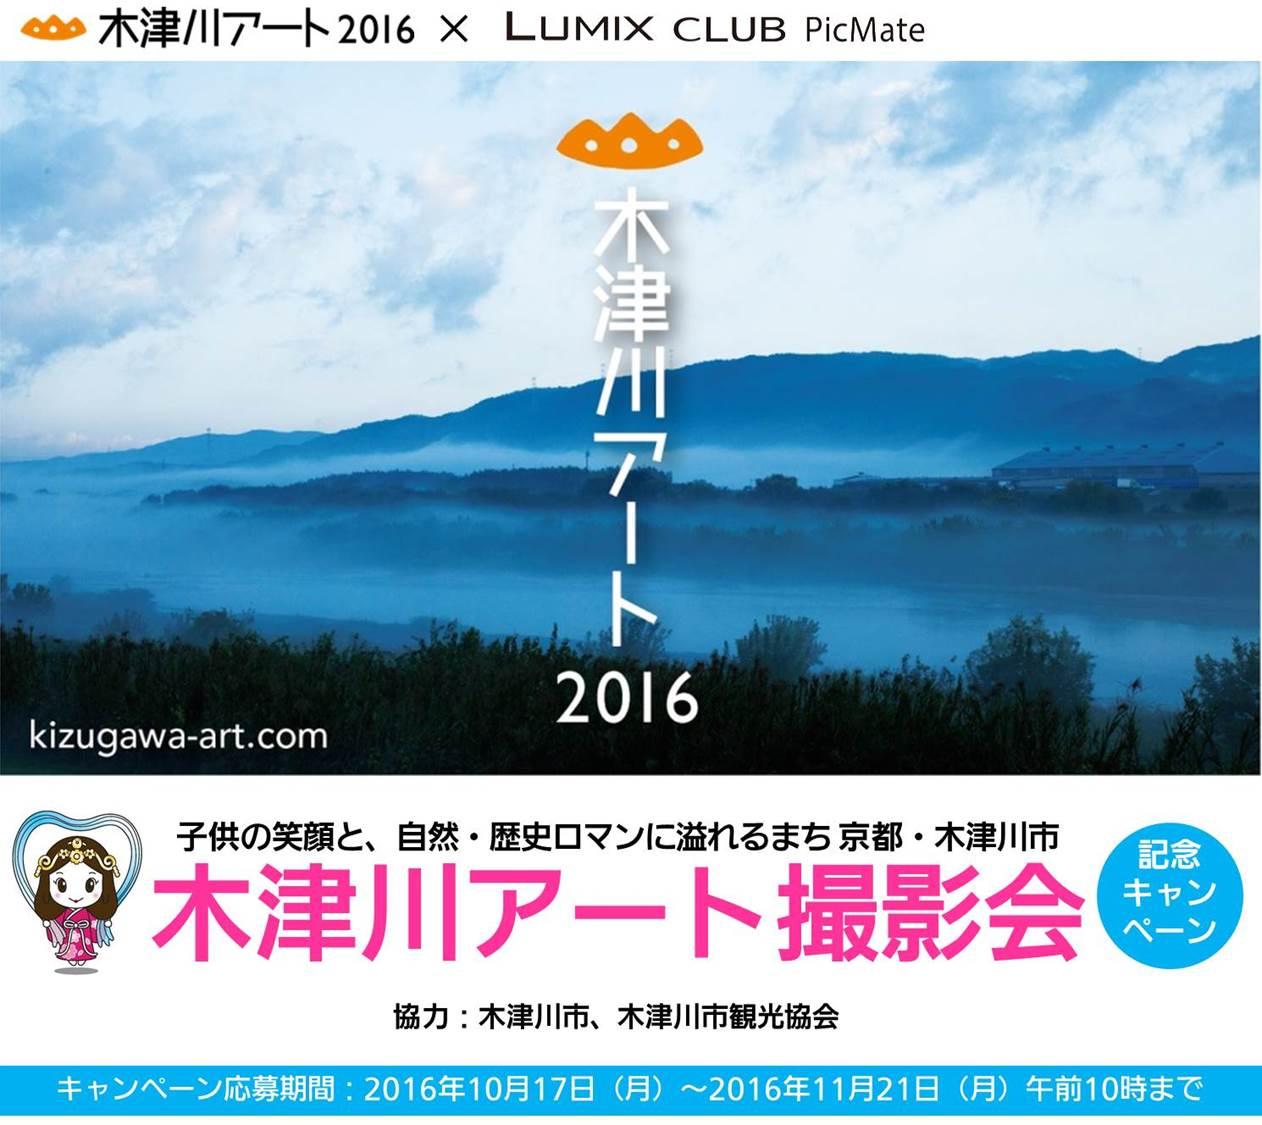 「木津川アート2016」で撮影会～「LUMIX CM10」無料貸し出しも実施